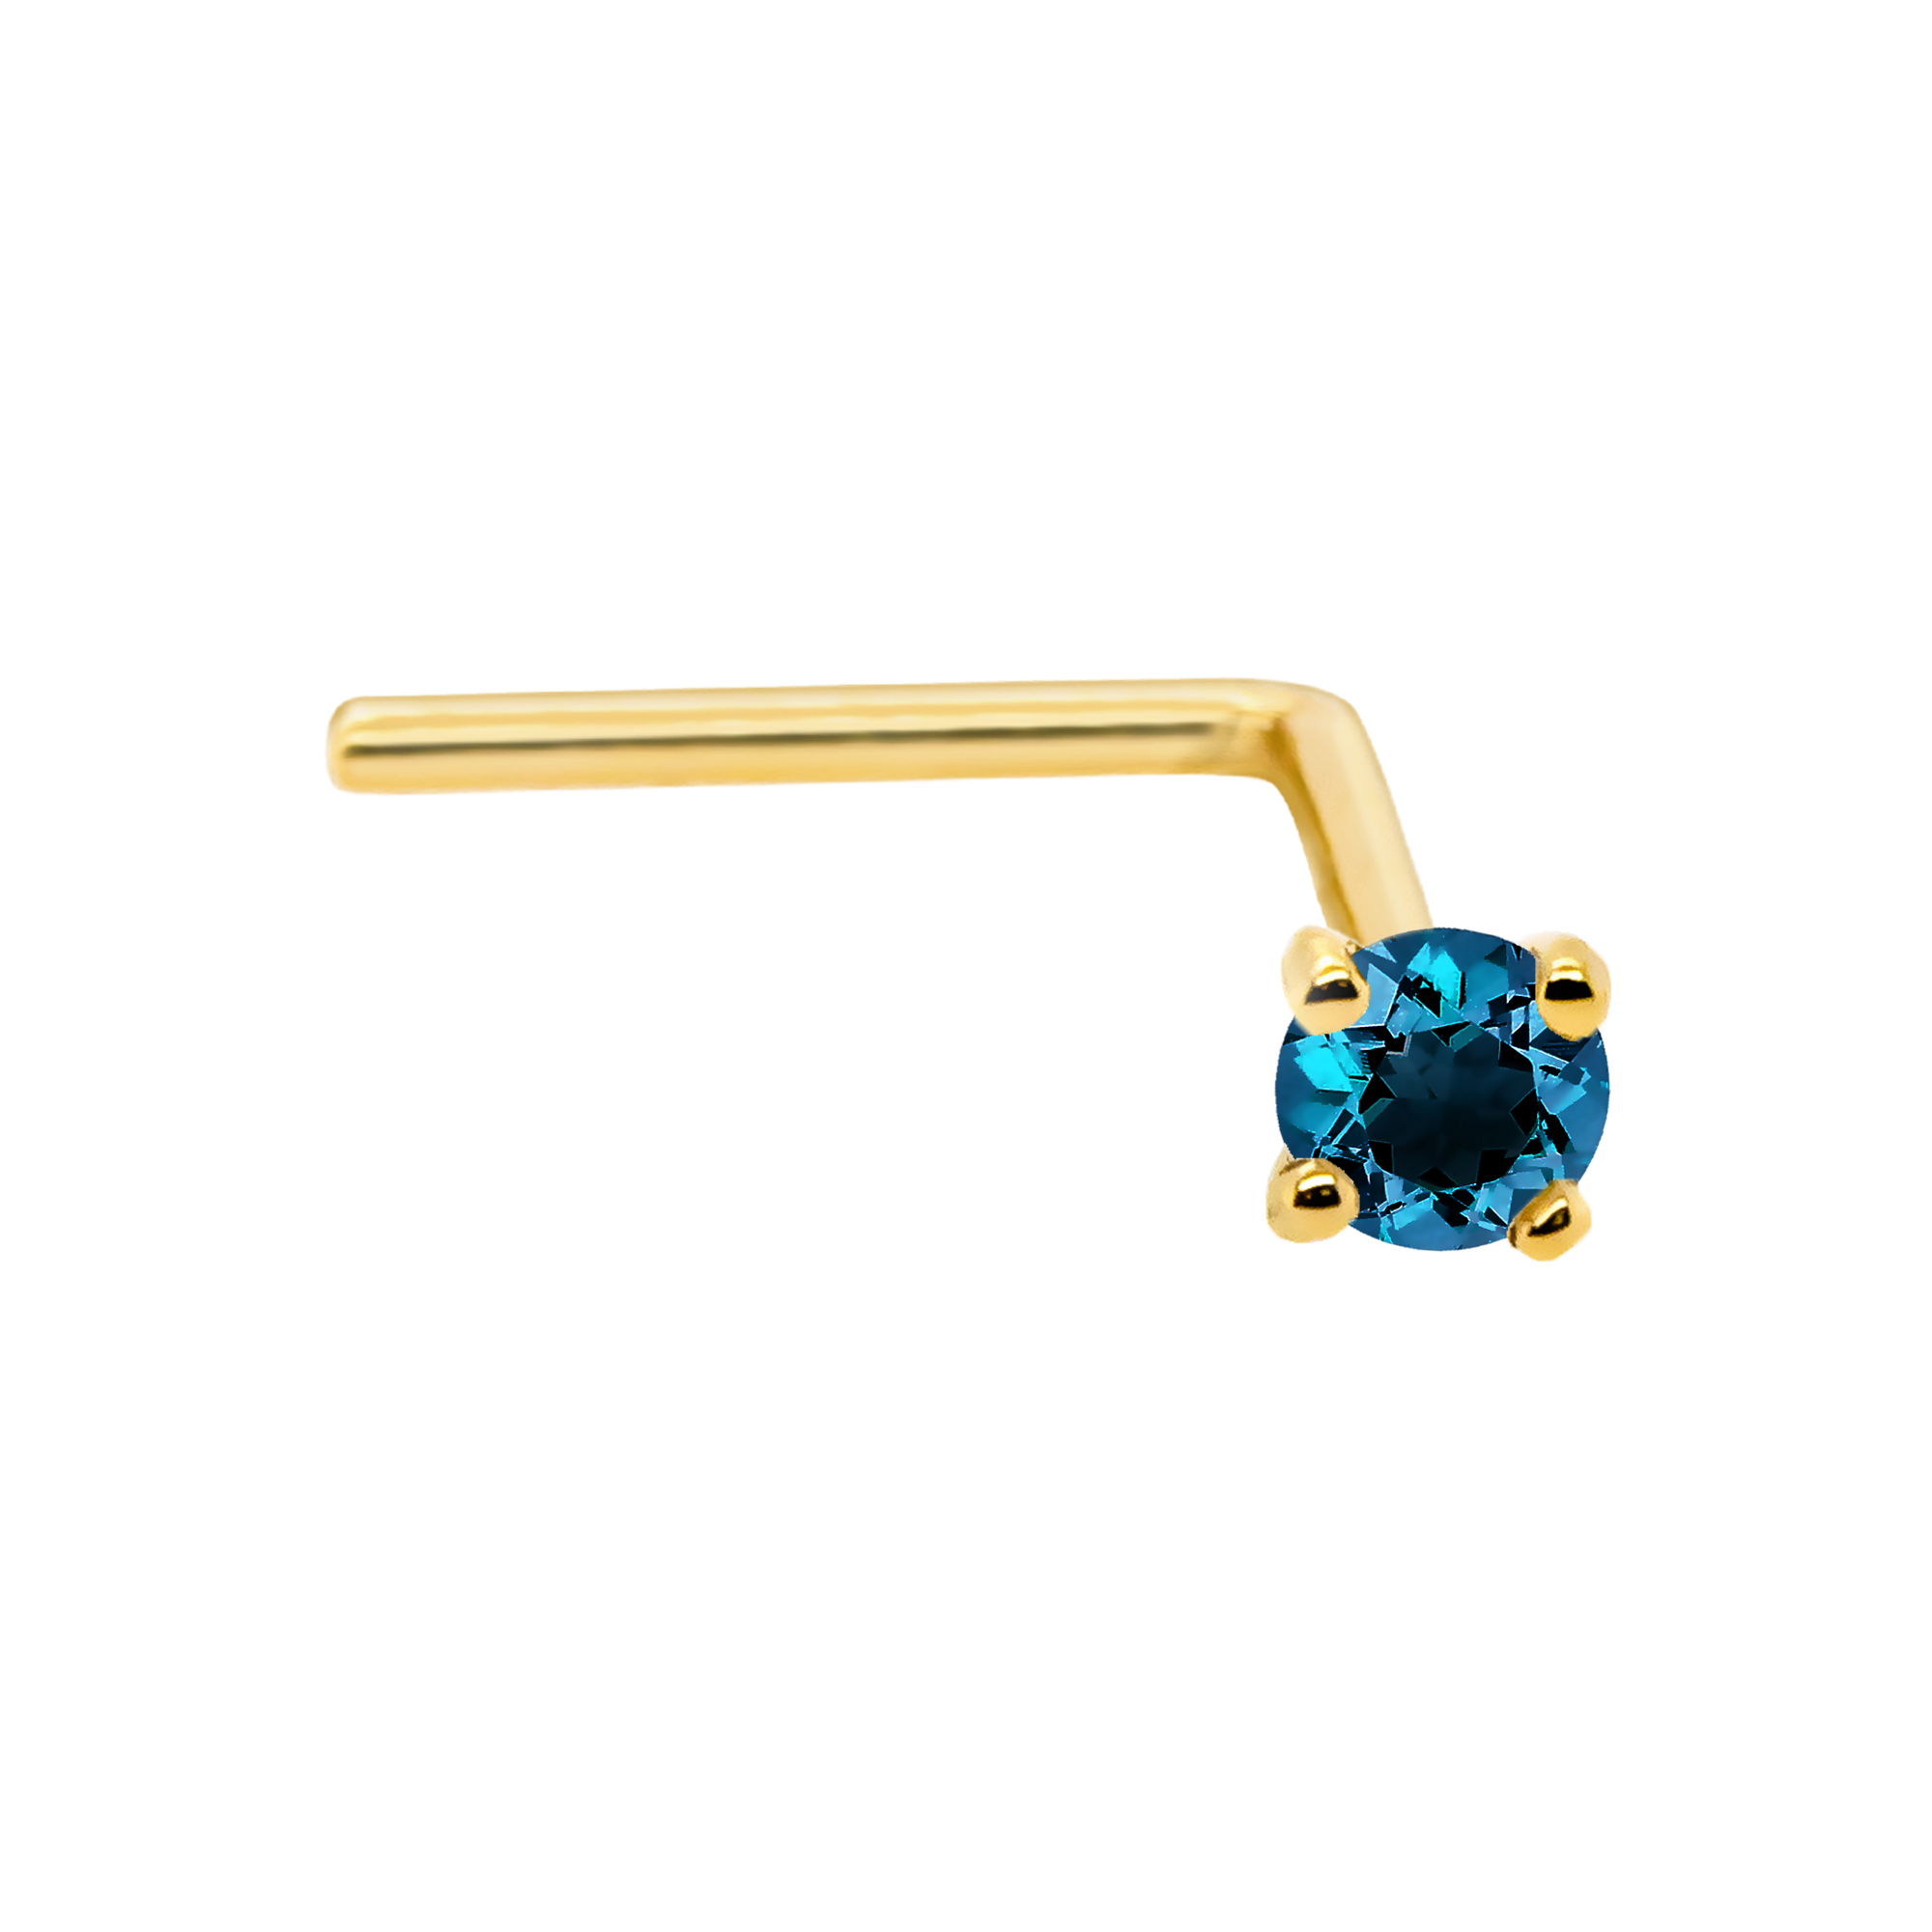 Diamond Nose Ring, Genuine Diamond Nose Hoop, Single Stone Nose Ring, Nose  Ring With Diamonds, 14K Gold Diamond Nose Jewelry Piercing - Etsy